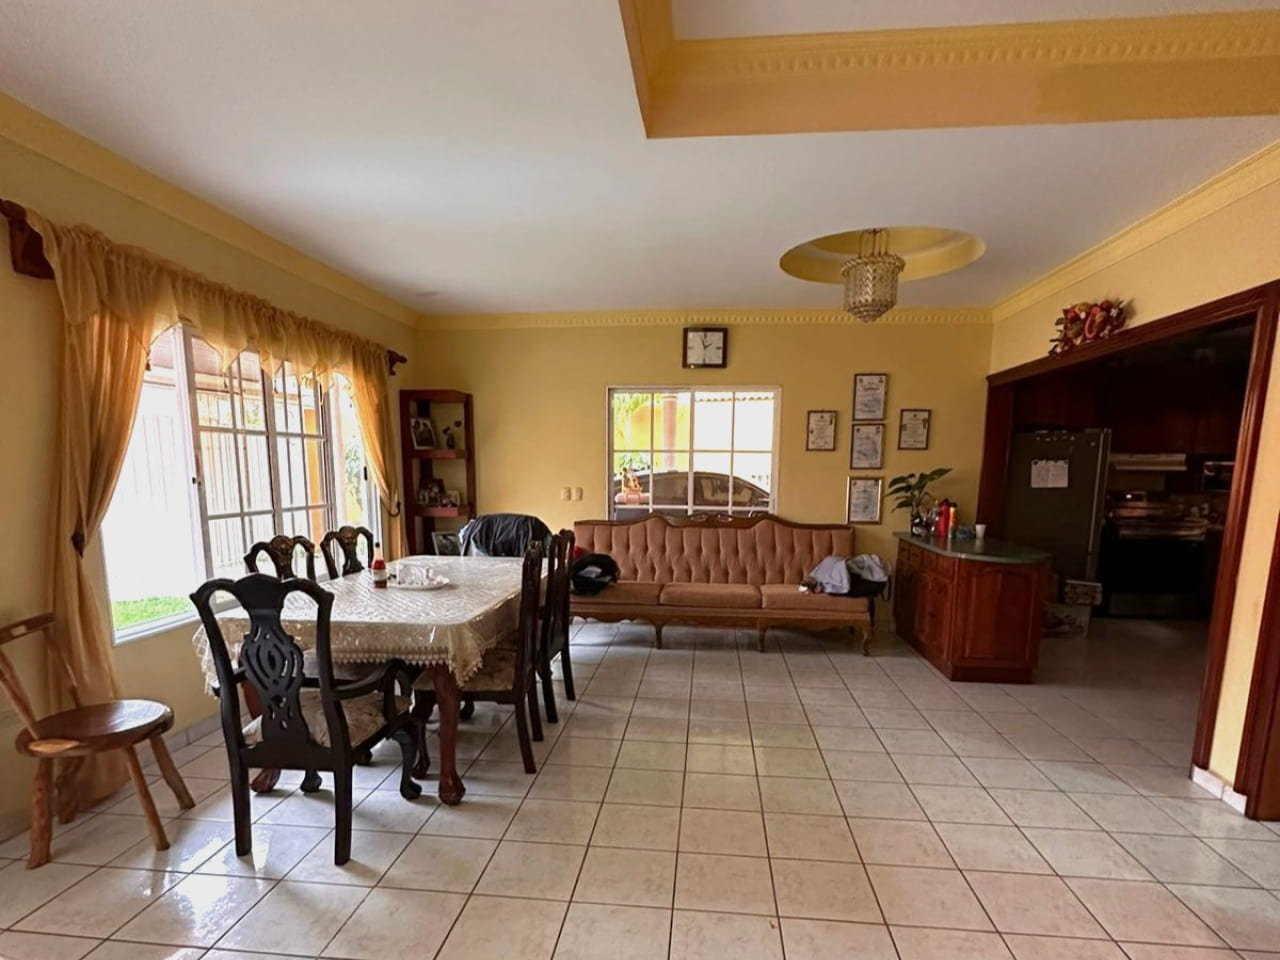 Area de comedor con con paredes de color amarillo y suelo de ceramica blanca, mesa de comedor de madera con 6 sillas de madera oscura, ventanas que dan vista al jardín.